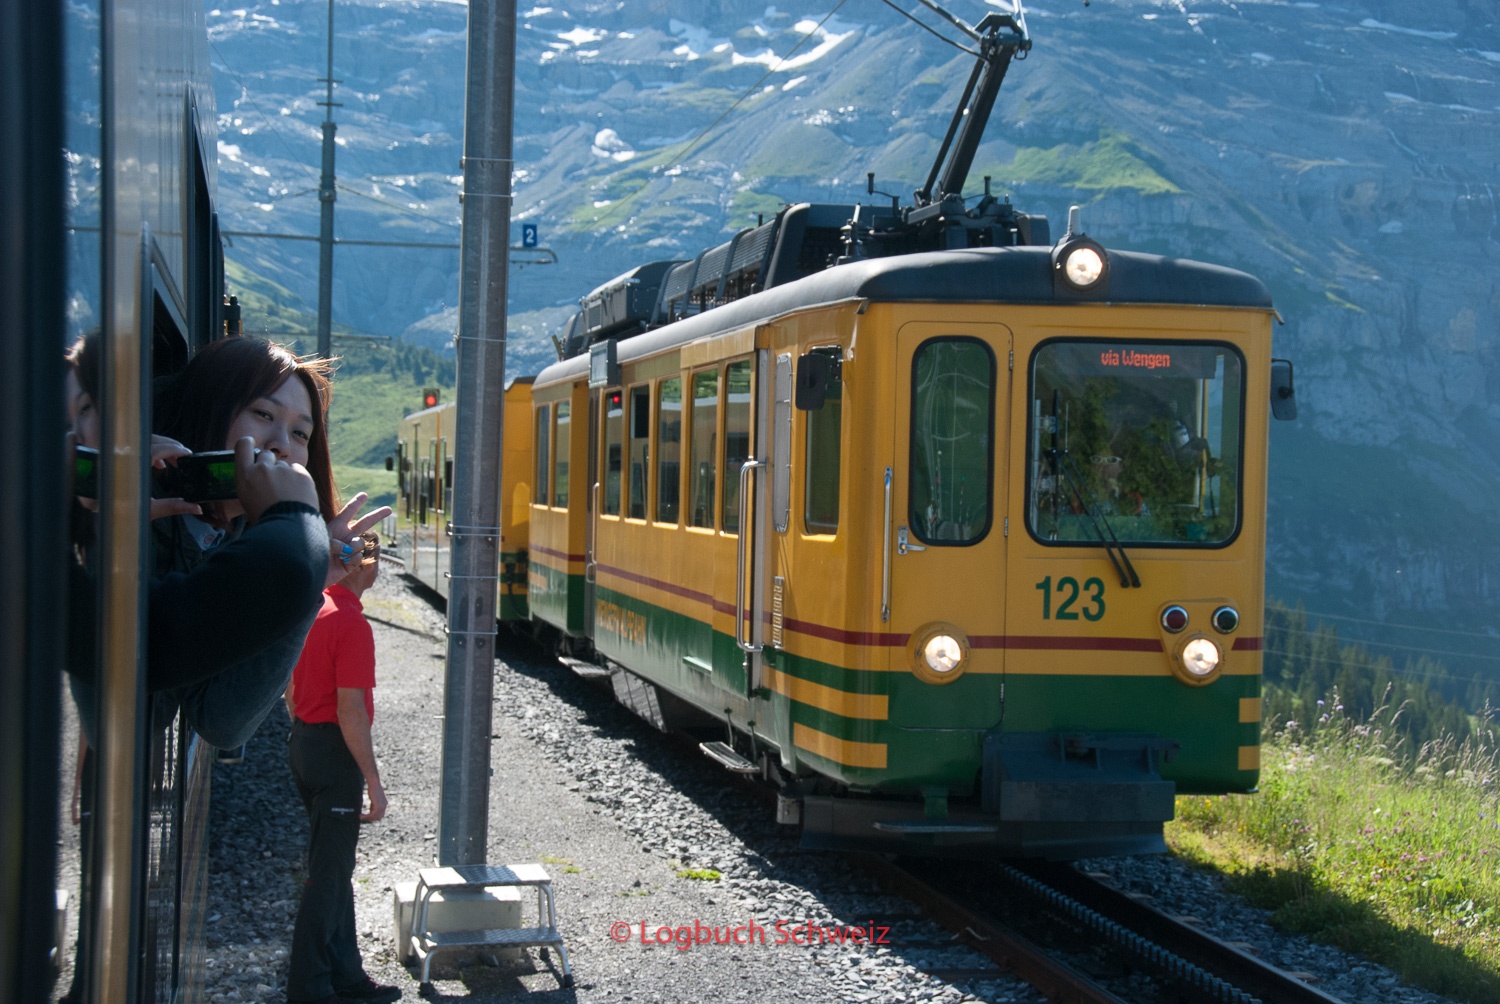 Jungfraujoch Wengeneralp Bahn